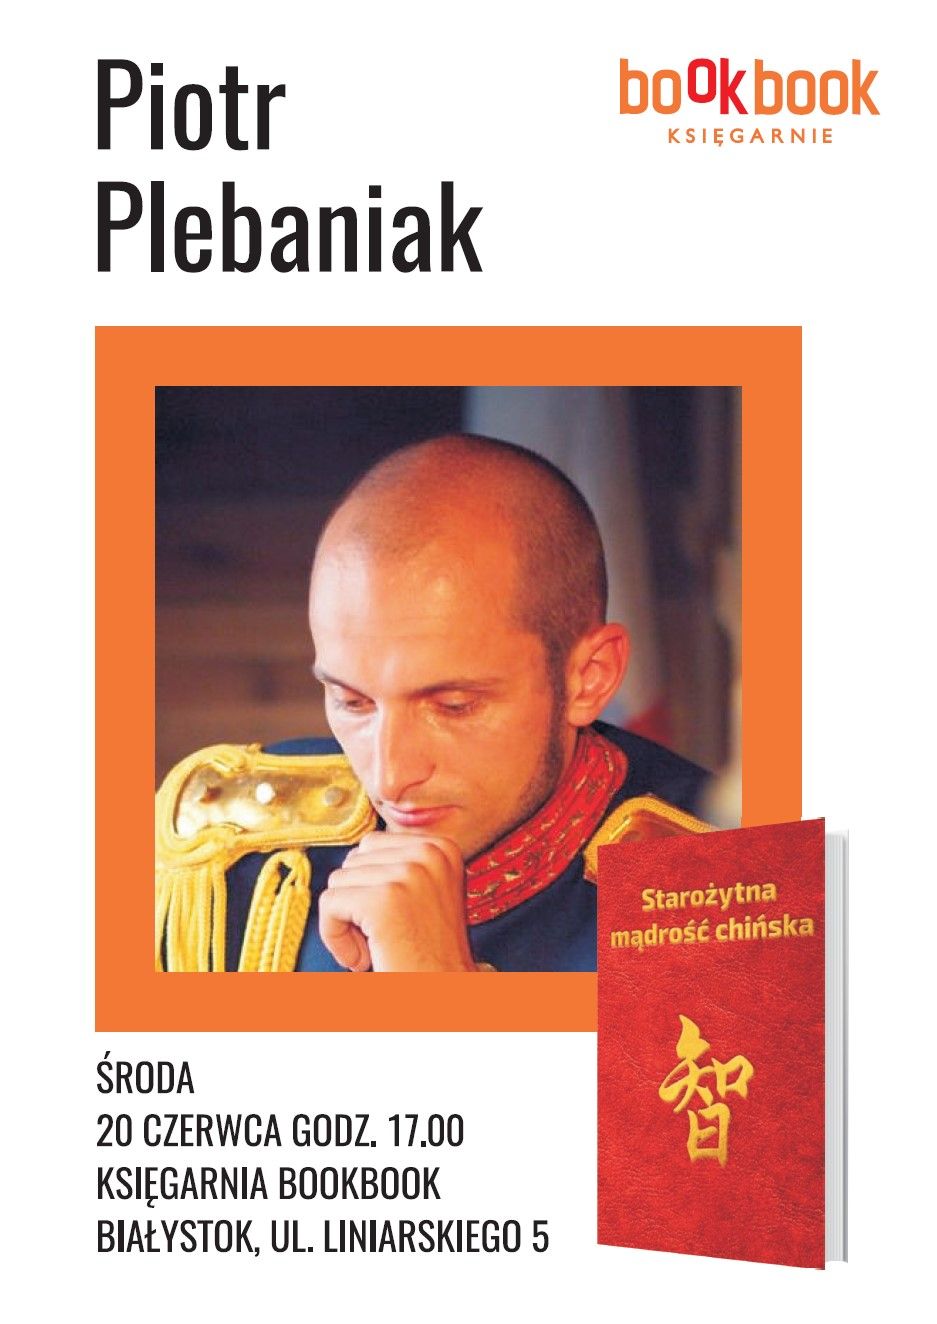 BookBook, Dzieje się,  Piotr Plebaniak